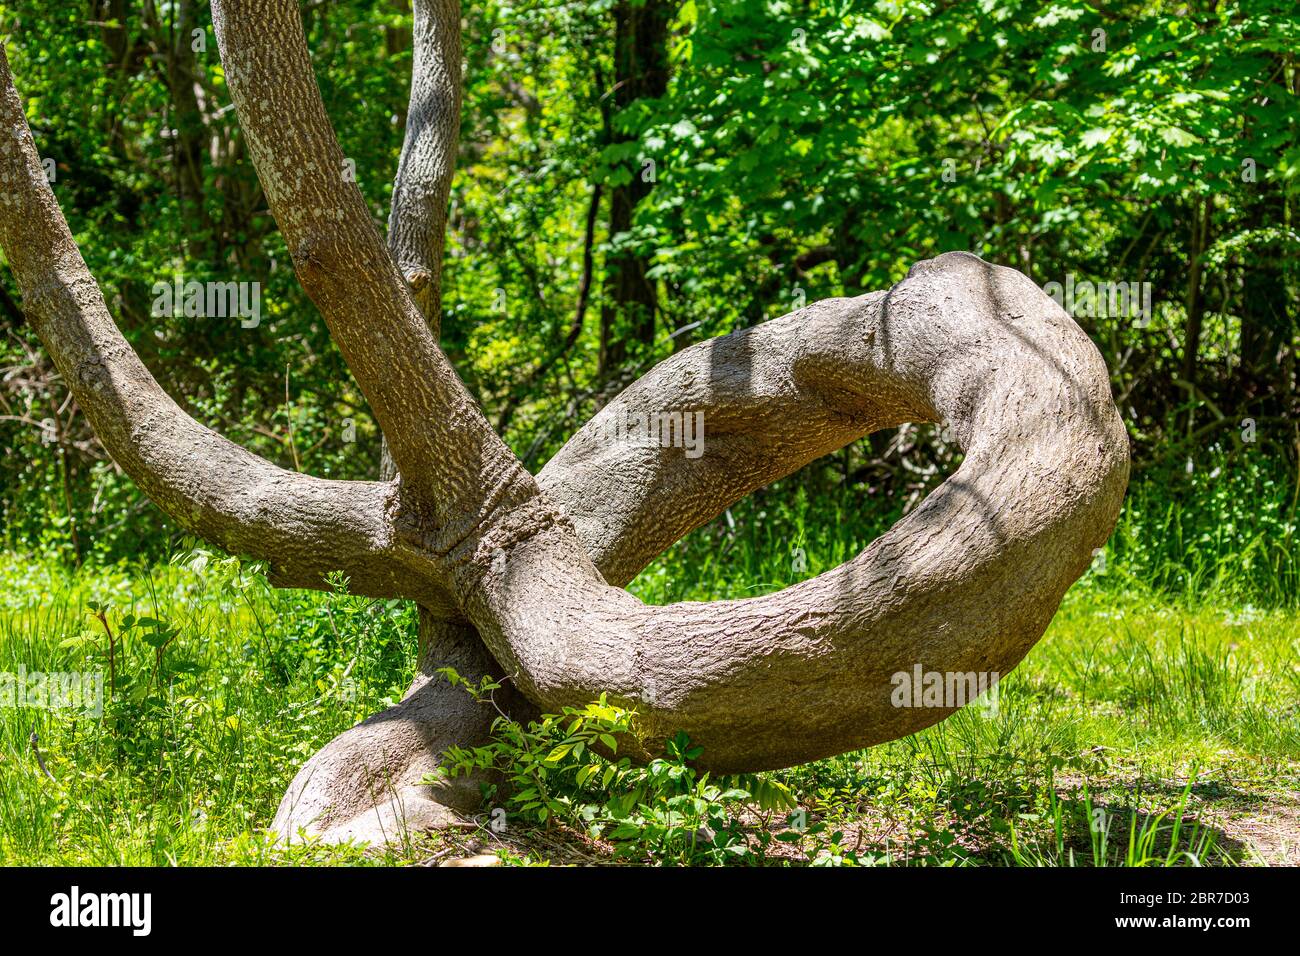 Un tronco de árbol increíble que se riza como una serpiente, Shelter Island, N Foto de stock